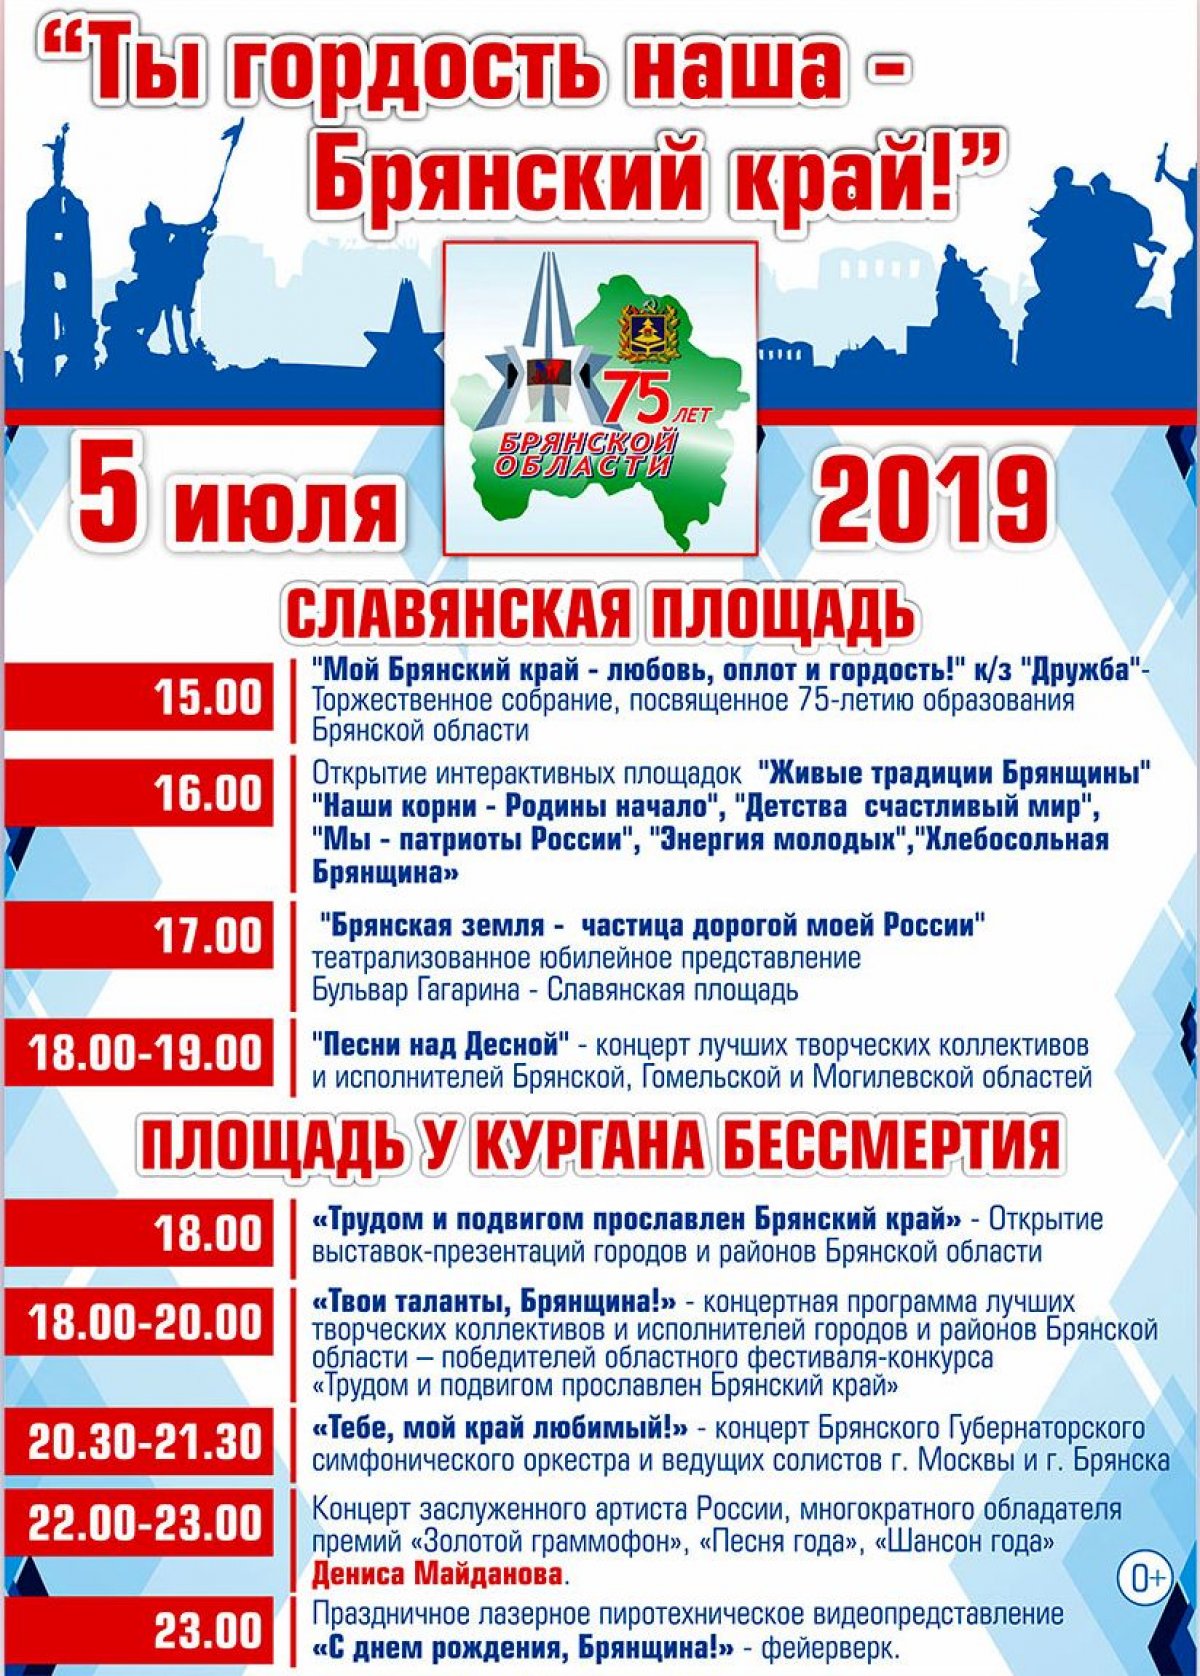 5 июля 2019 года Брянская область отмечает 75-летие со дня образования. В этот день праздничные мероприятия пройдут на Славянской площади и на площади у Кургана Бессмертия.